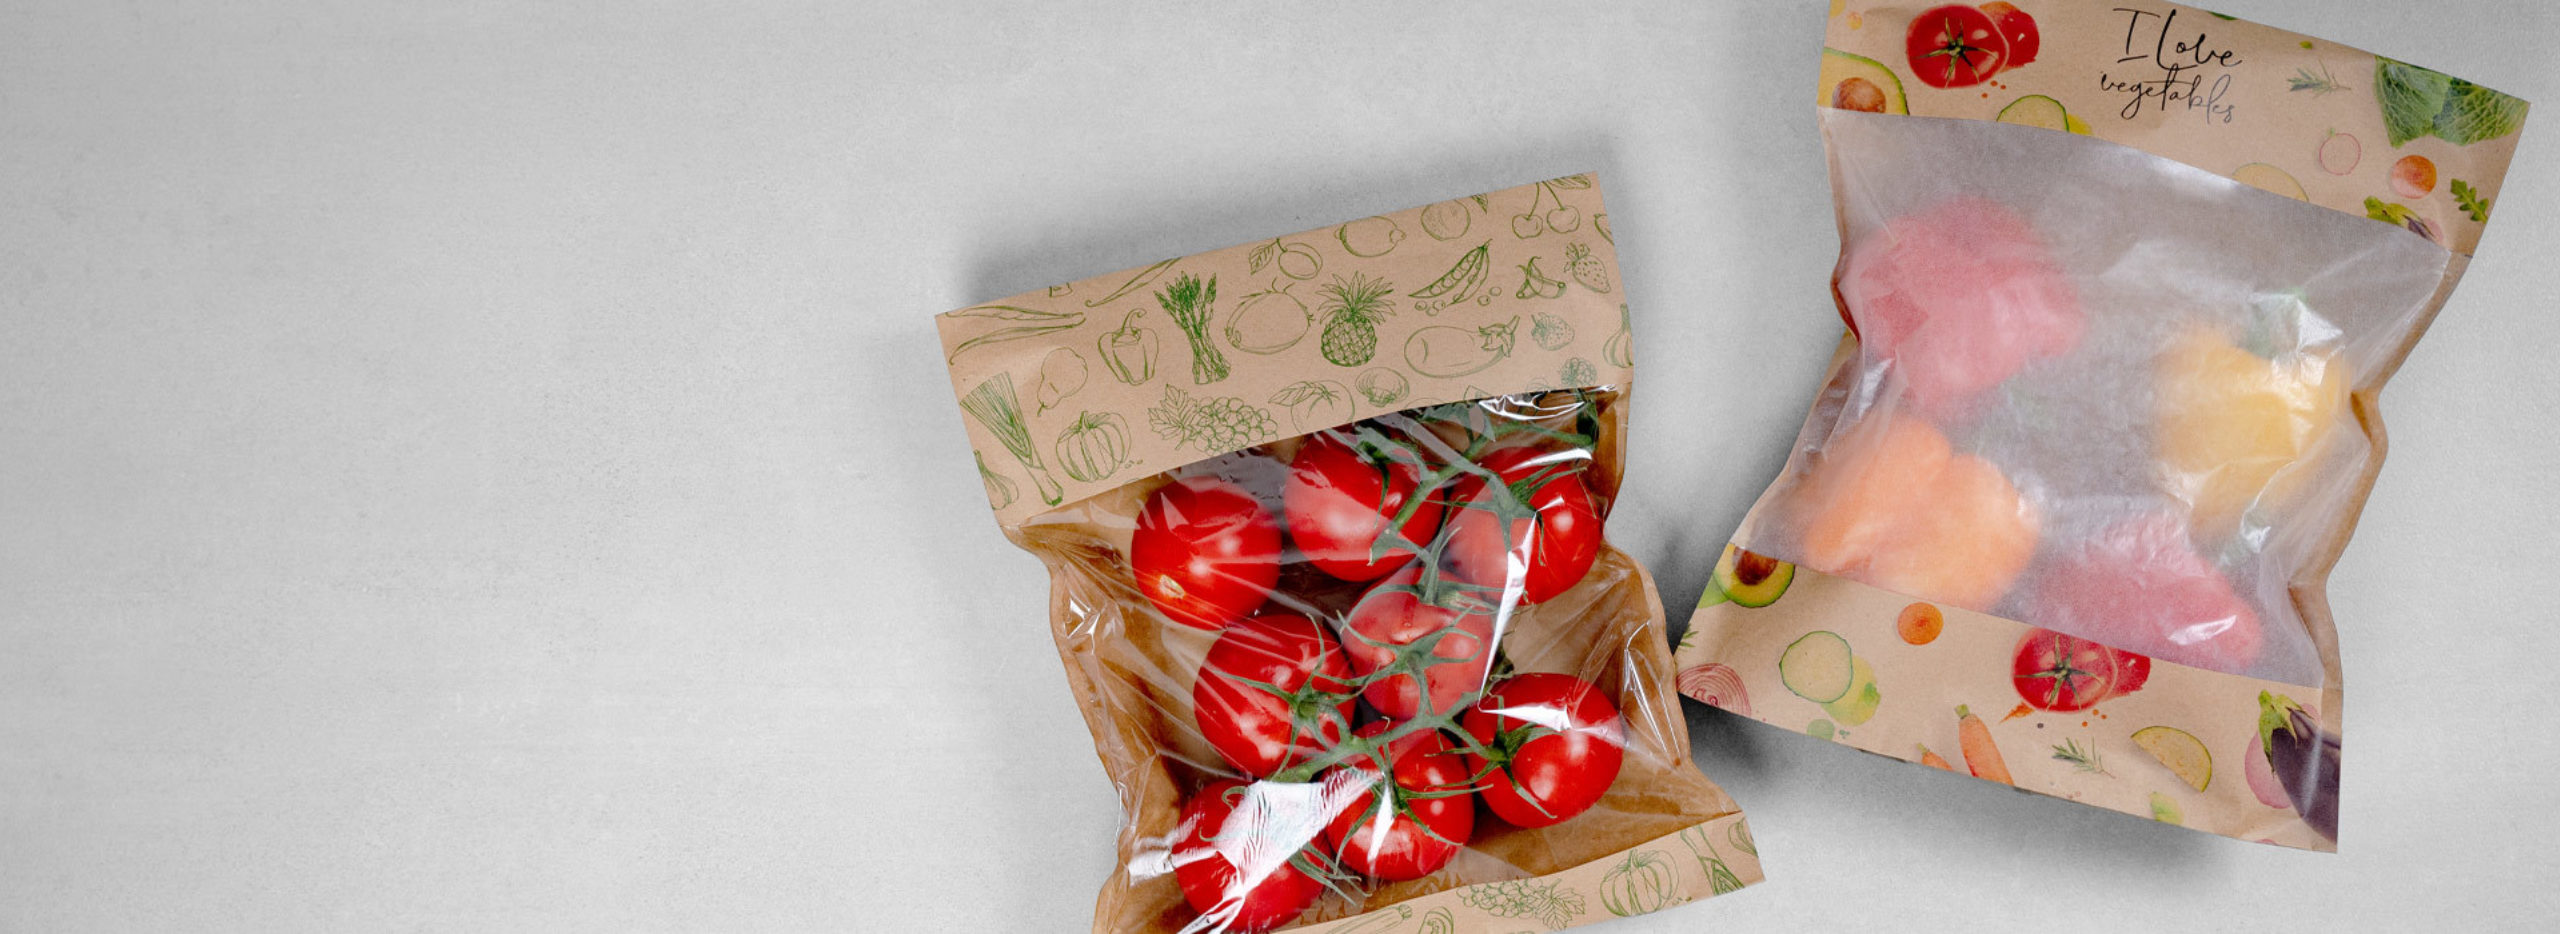 Verpackung für Obst und Gemüse